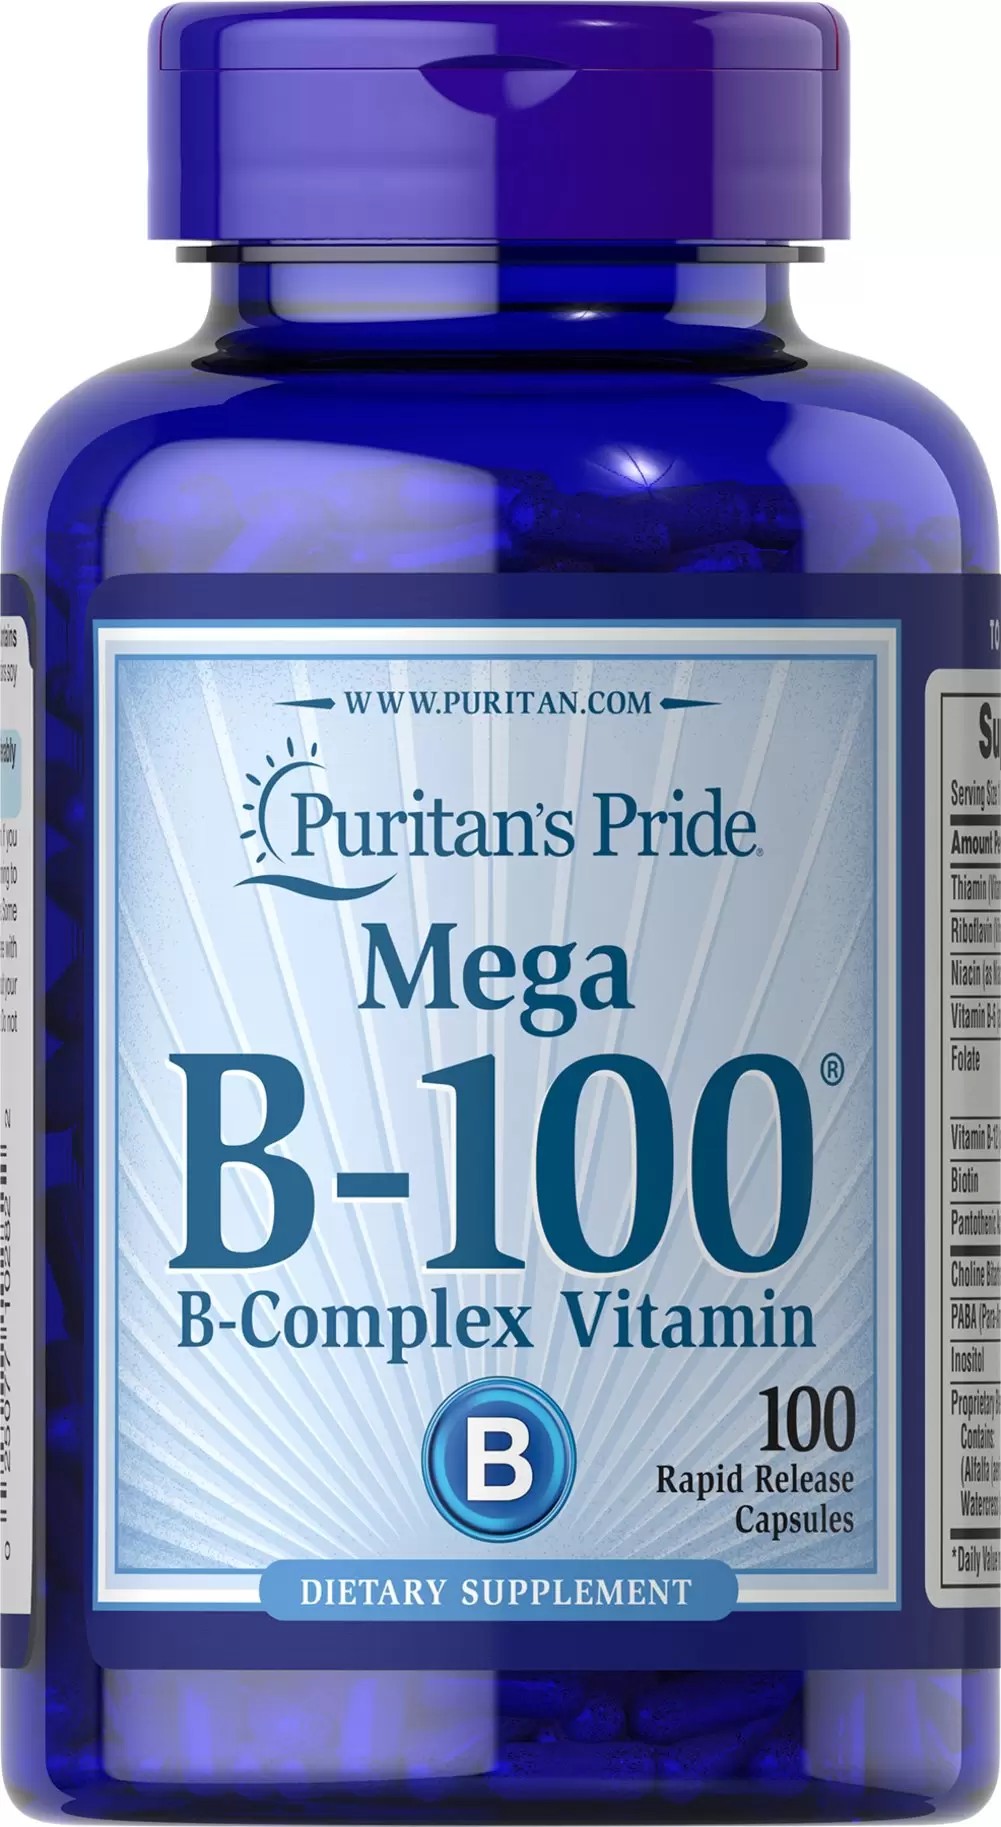 Mega complejo de vitamina B-100 x 100 cápsulas de rápida acción.